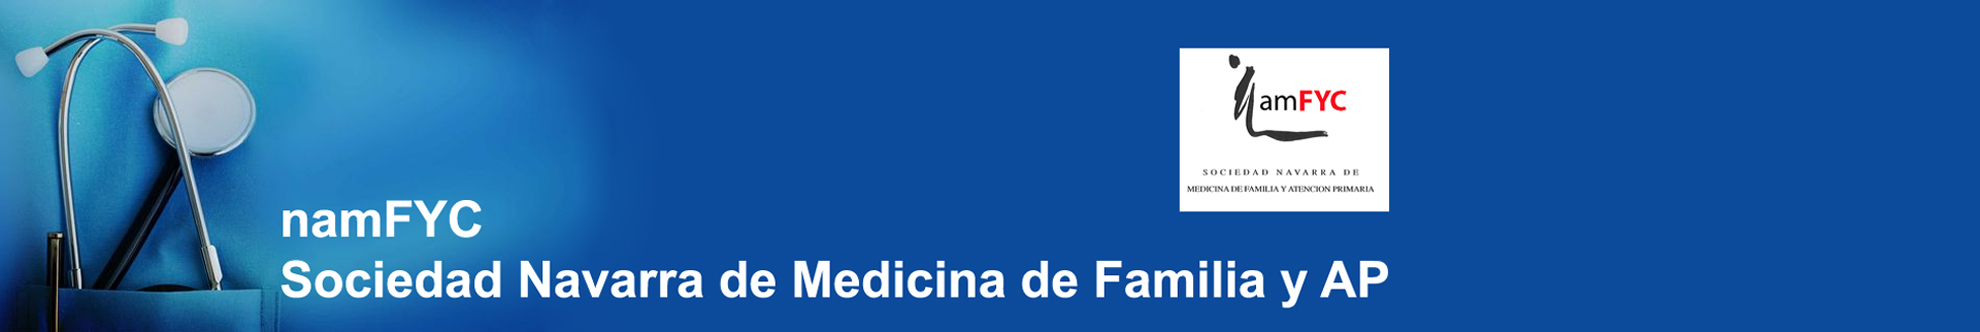 namFYC- Sociedad Navarra de Medicina de Familia y AP